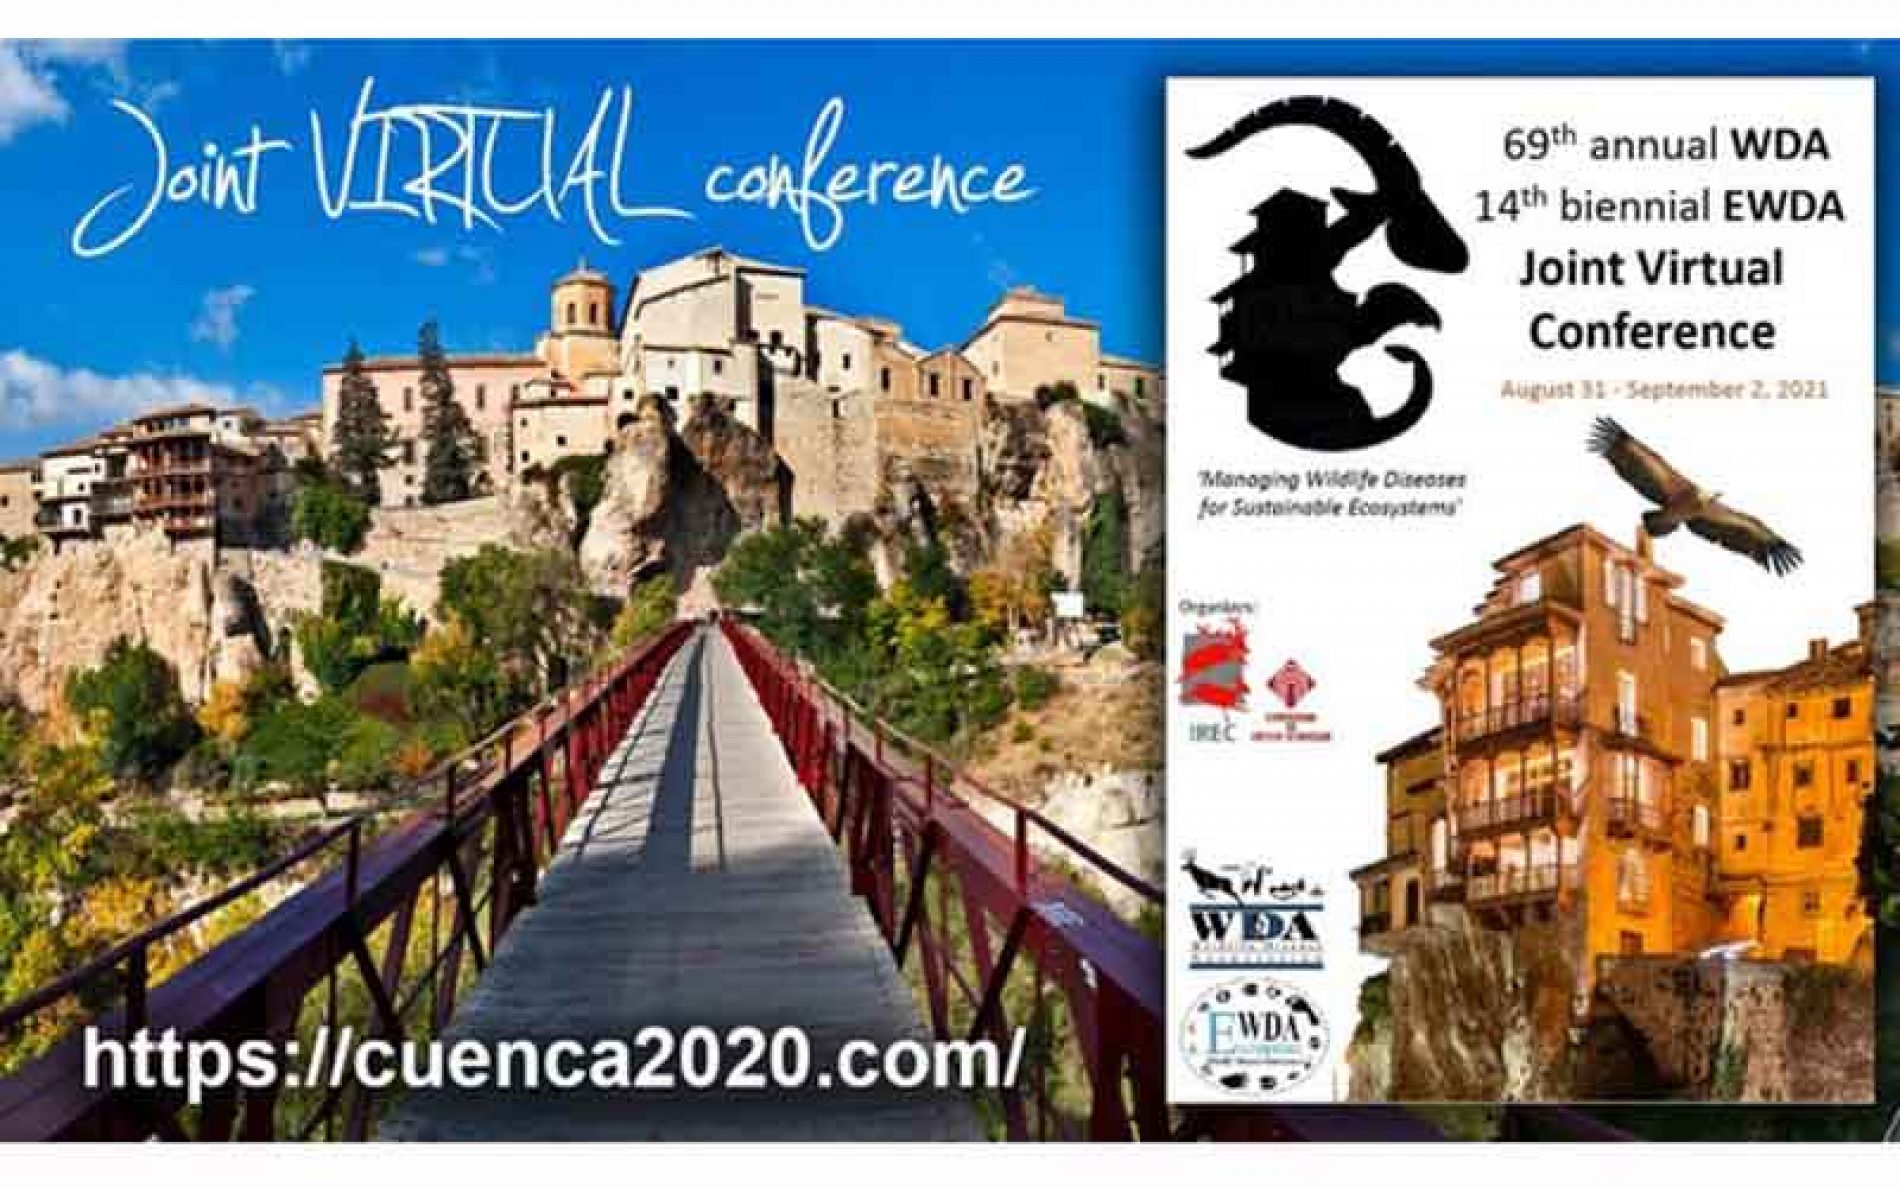 El IREC reúne a casi 600 científicos y profesionales de la salud de la fauna silvestre en el congreso internacional WDA-EWDA